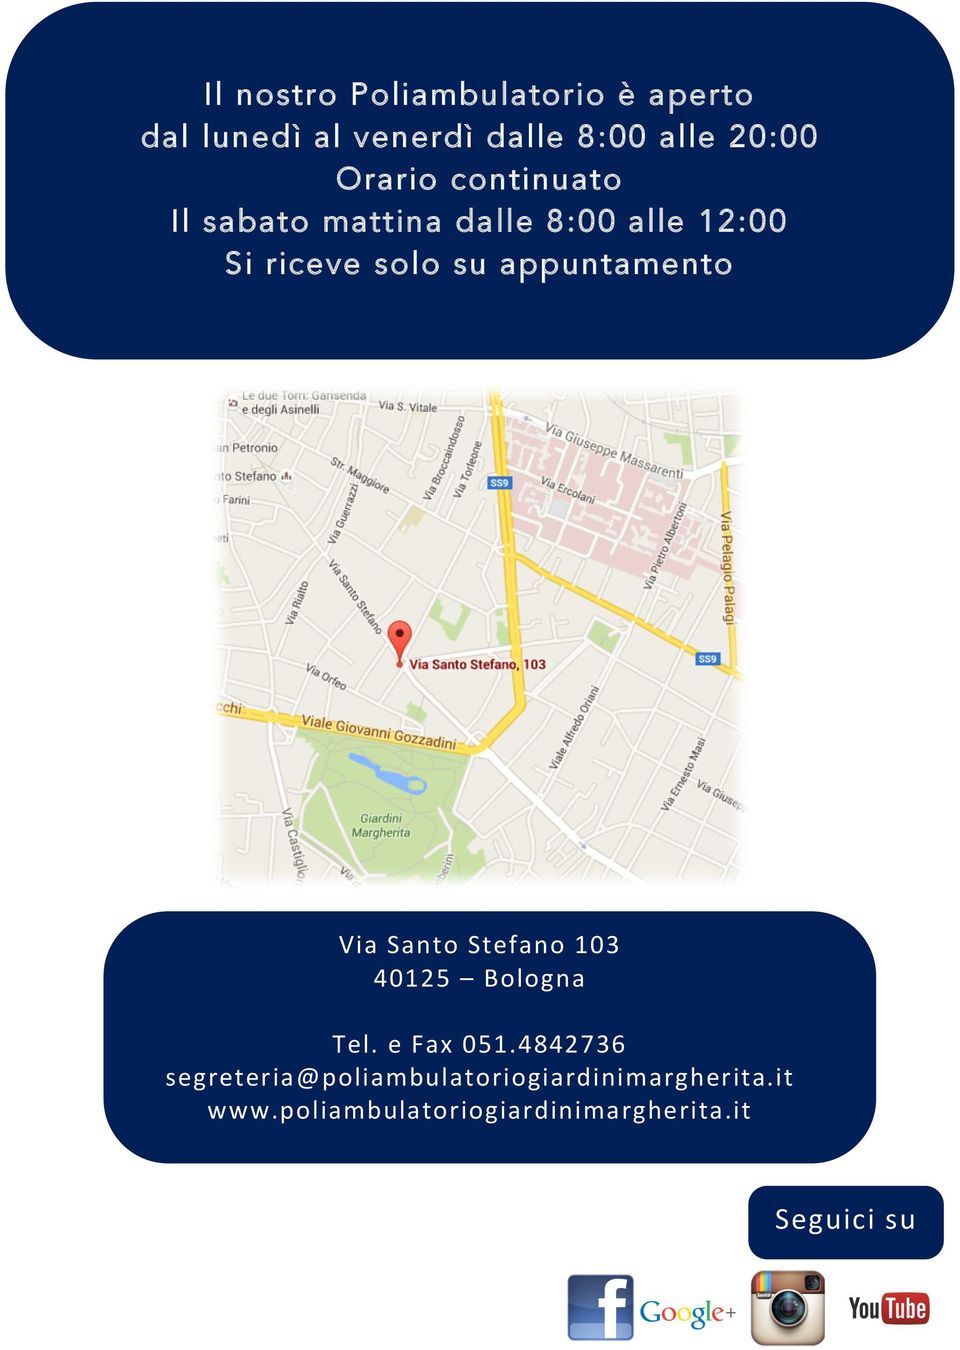 untamento Via Santo Stefano 103 40125 Bologna Tel. e Fax 051.